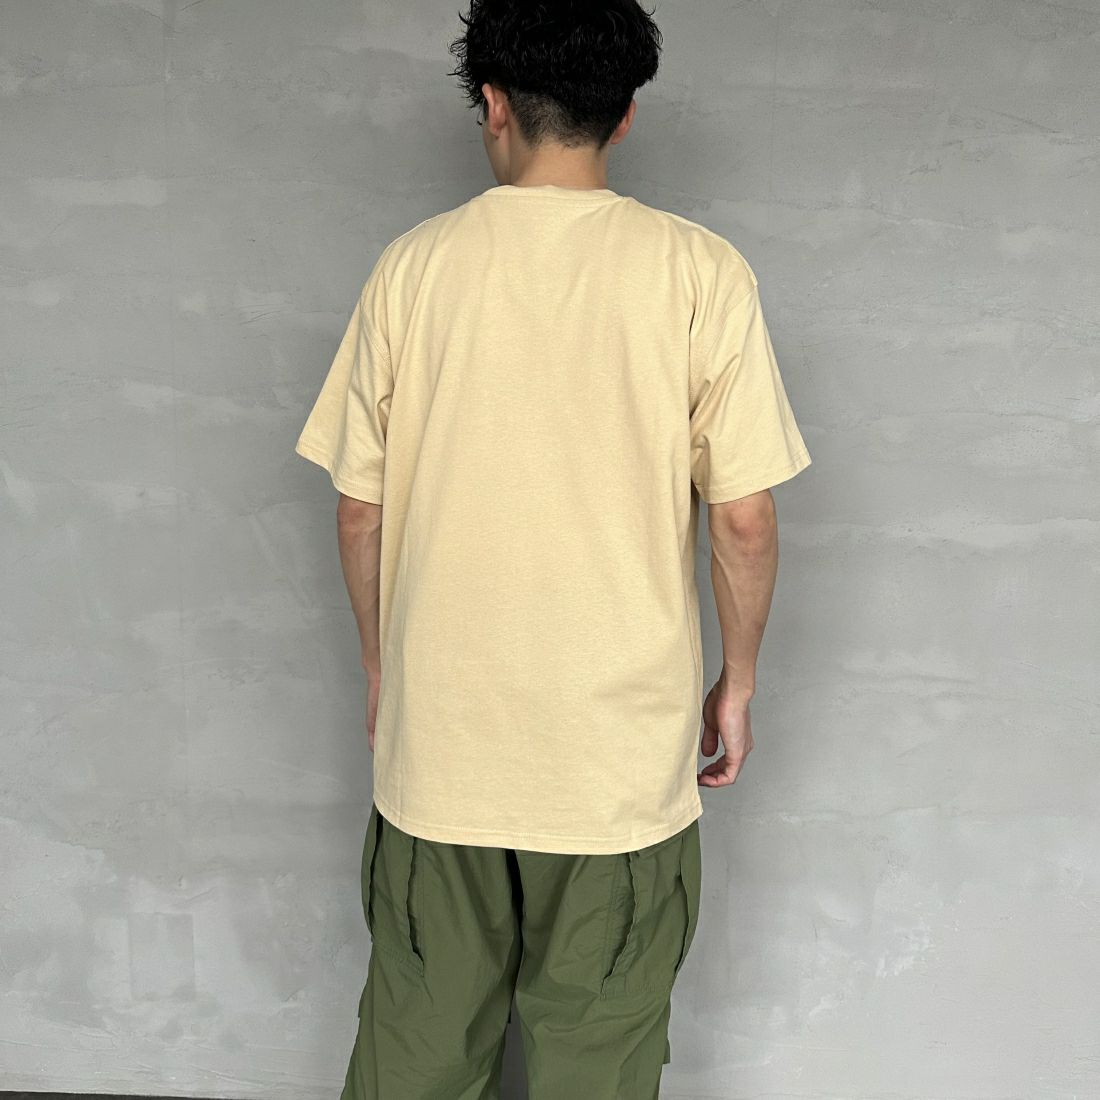 carhartt WIP [カーハートダブリューアイピー] ショートスリーブアメリカンスクリプトTシャツ [I029956] RATTAN &&モデル身長：168cm 着用サイズ：M&&